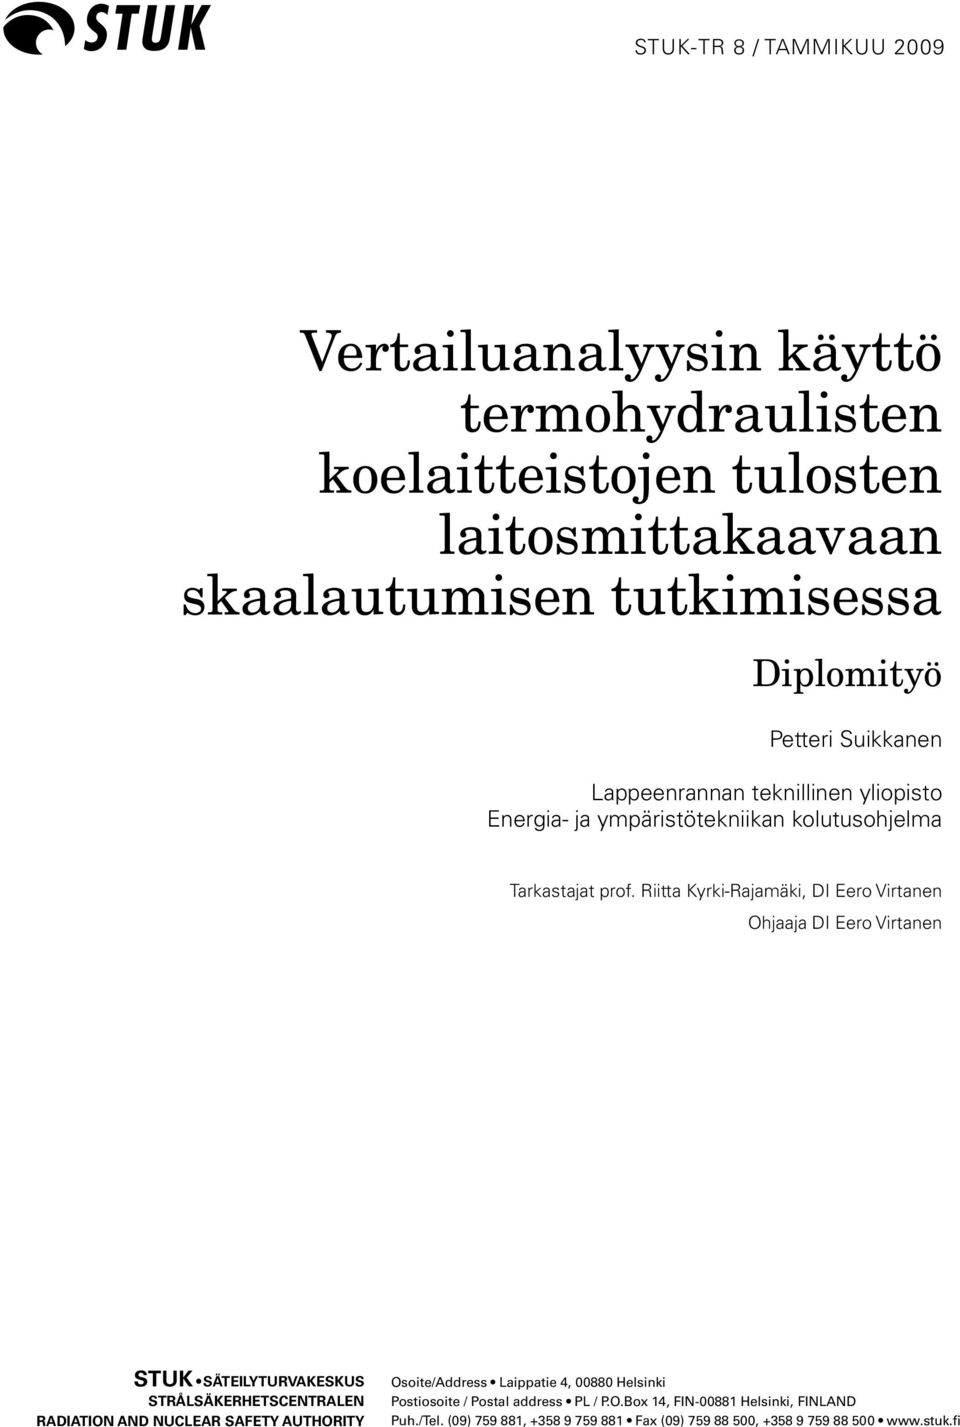 Riitta Kyrki-Rajamäki, DI Eero Virtanen Ohjaaja DI Eero Virtanen STUK SÄTEILYTURVAKESKUS STRÅLSÄKERHETSCENTRALEN RADIATION AND NUCLEAR SAFETY AUTHORITY